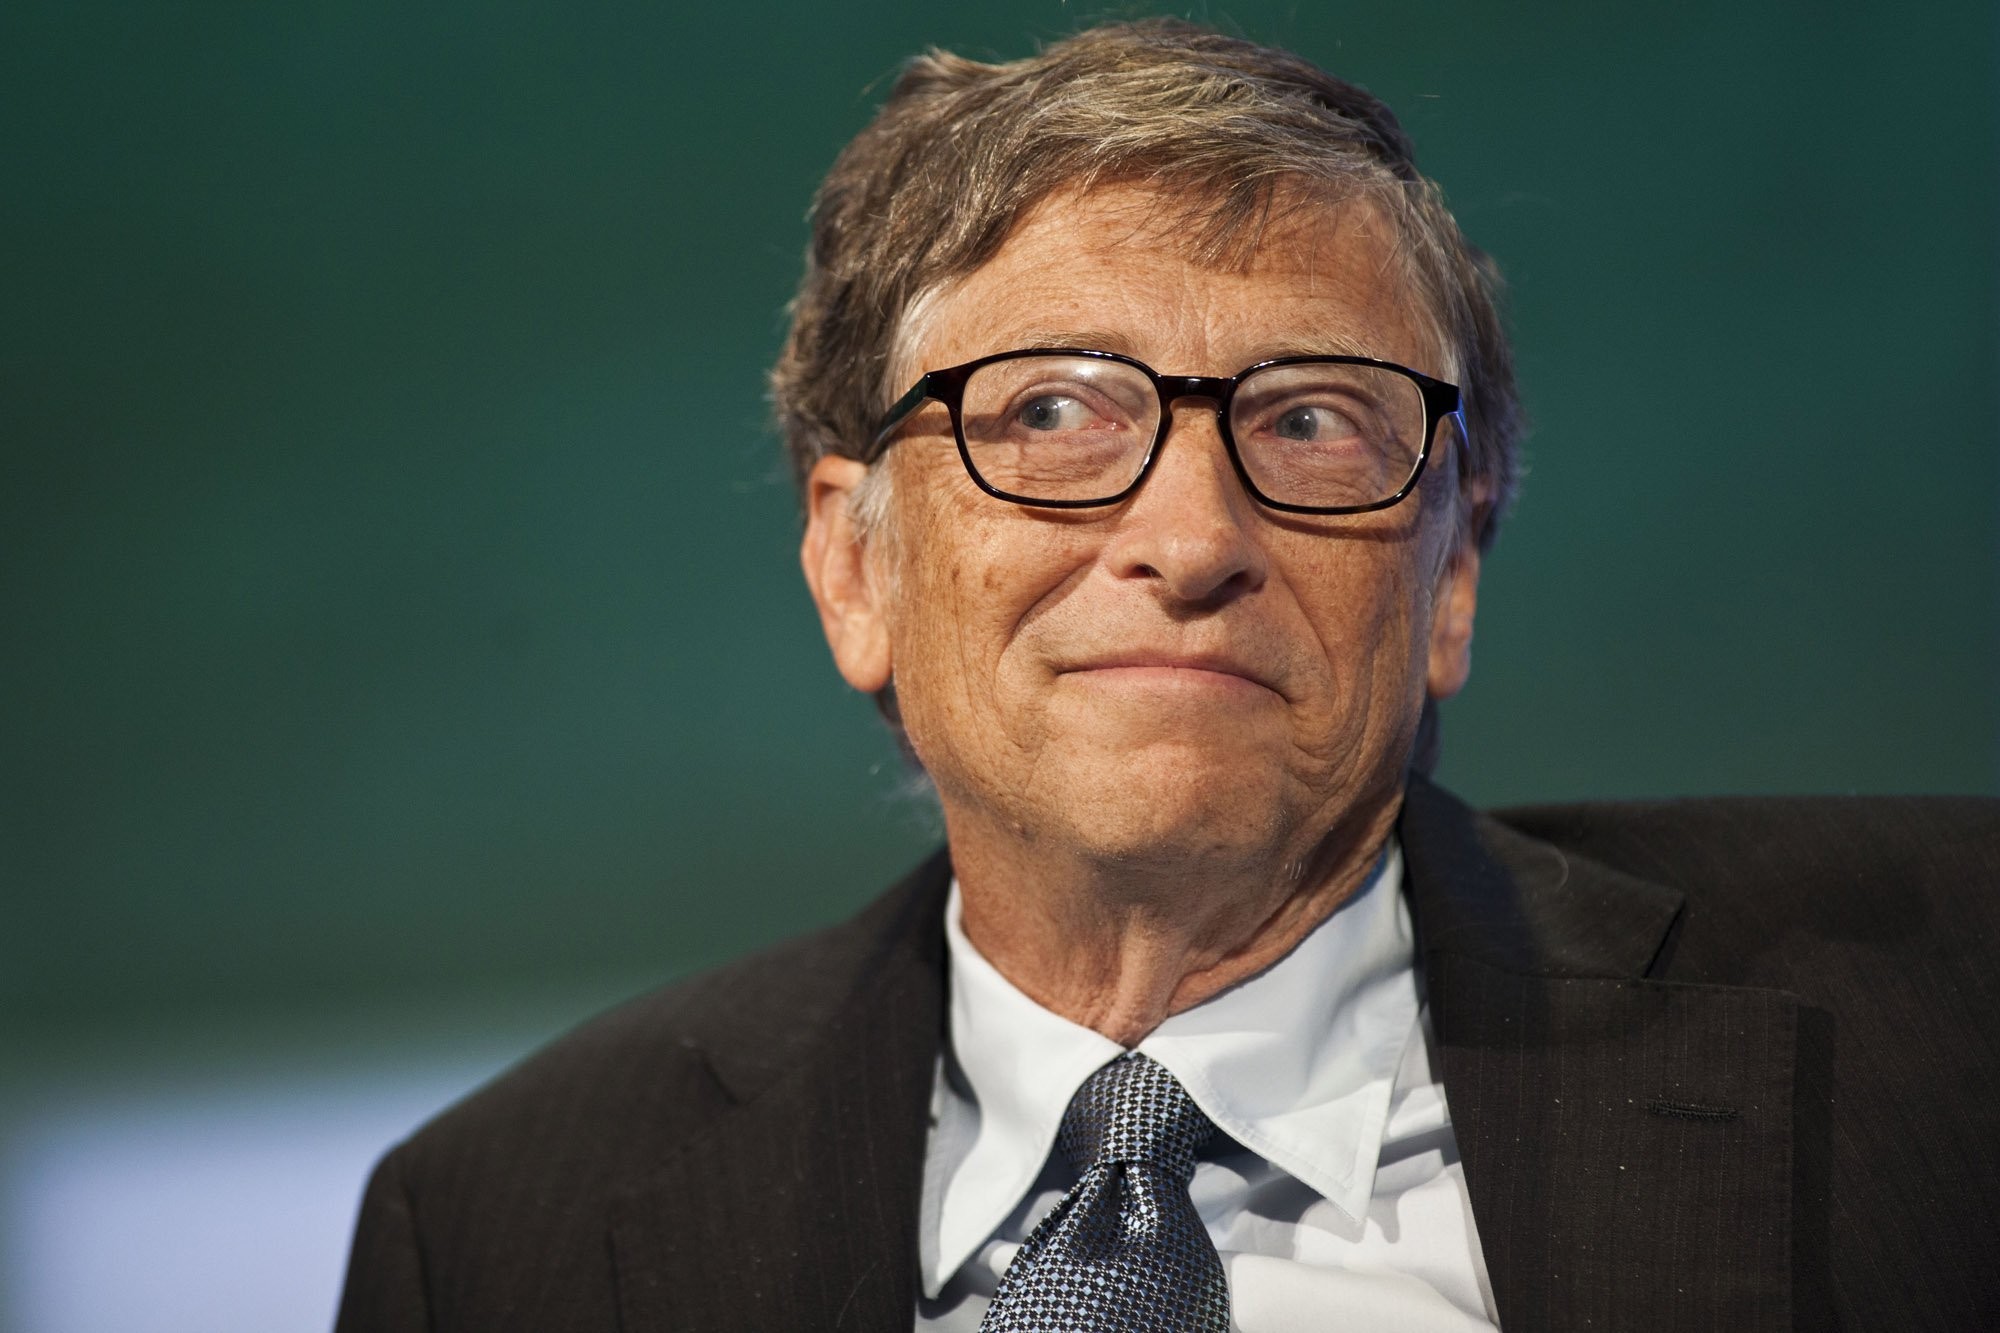 Bill Gates no terminó sus estudios y su primera empresa, Traf-O-Data falló escandalosamente. Aprendió de su experiencia y después creo Microsoft. Bill Gates no sólo es una de los hombres más ricos del mundo, si no también es un gran filántropo.